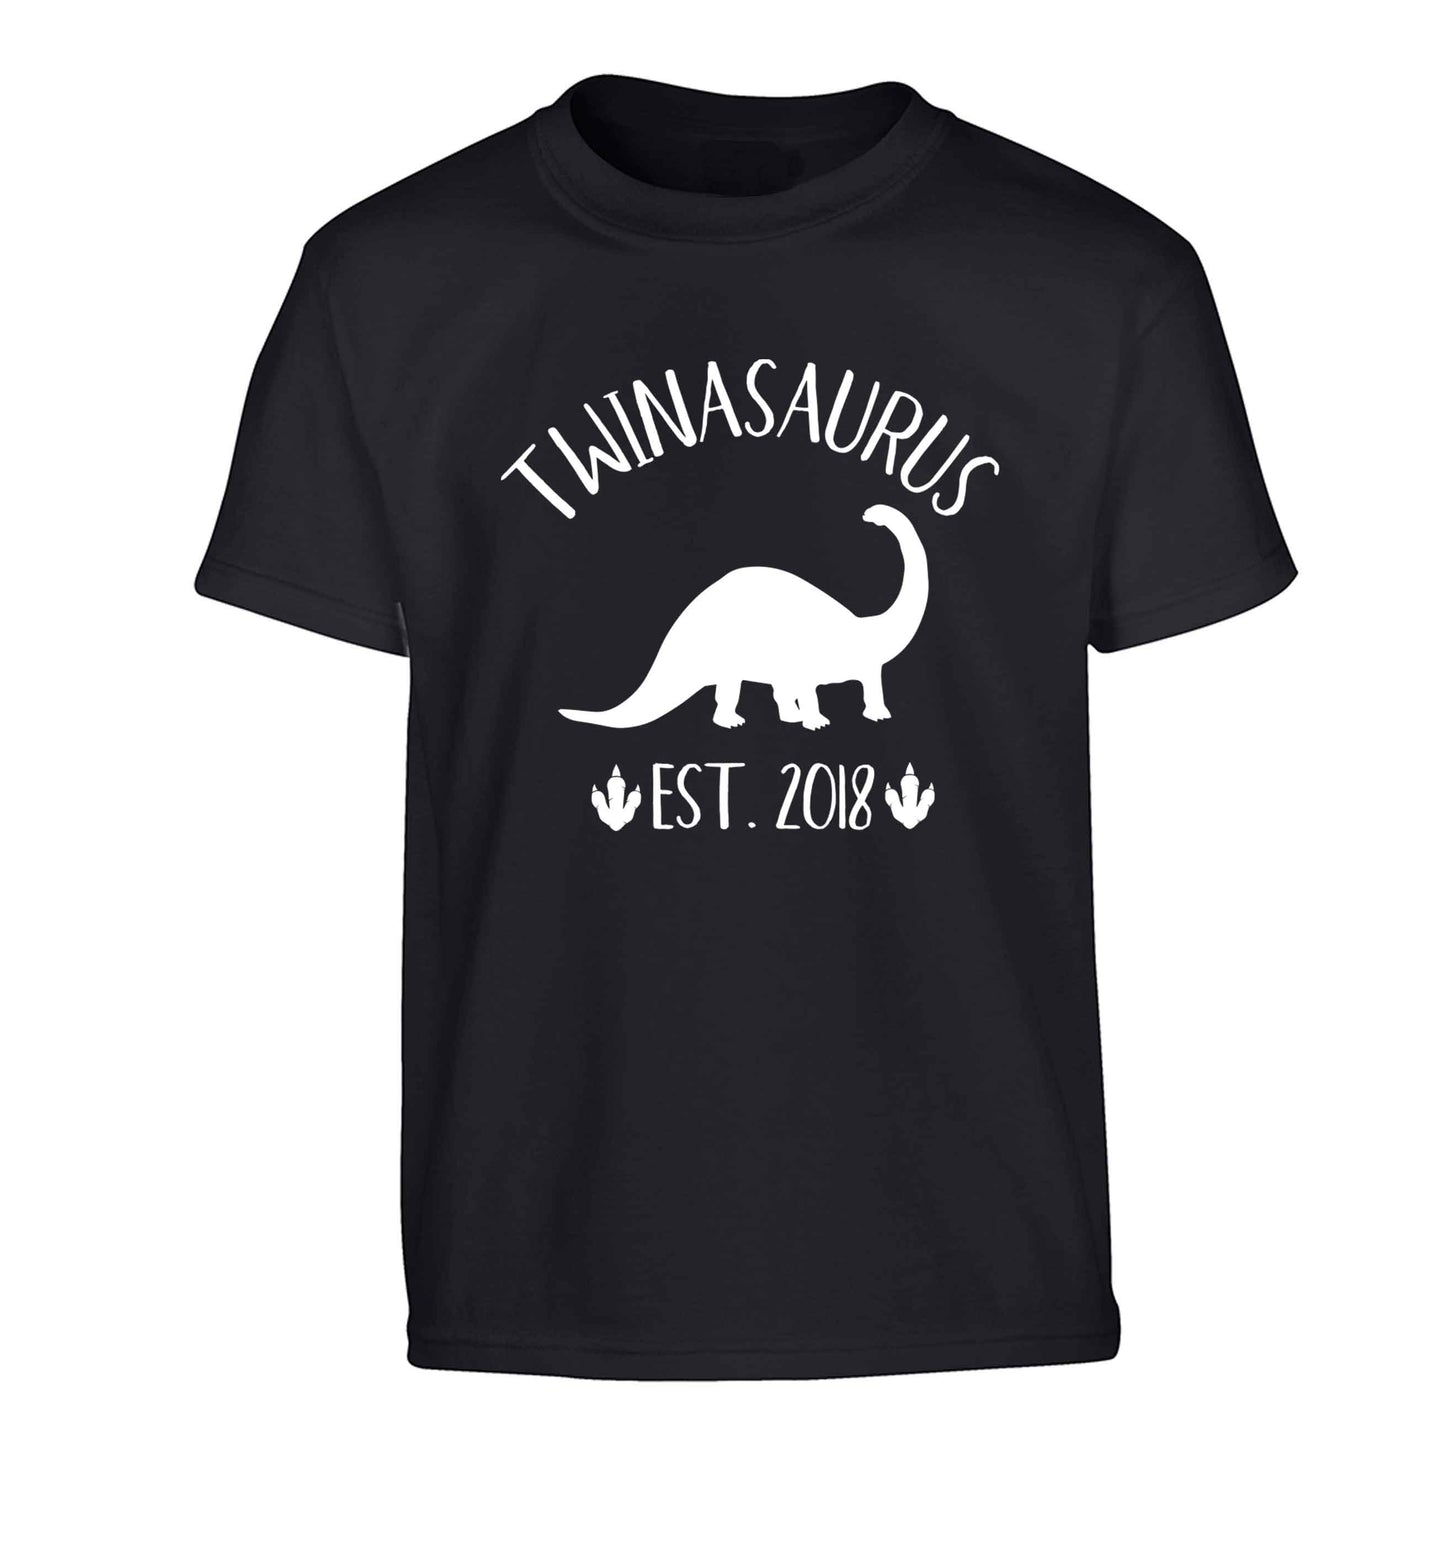 Personalised twinasaurus since (custom date) Children's black Tshirt 12-13 Years